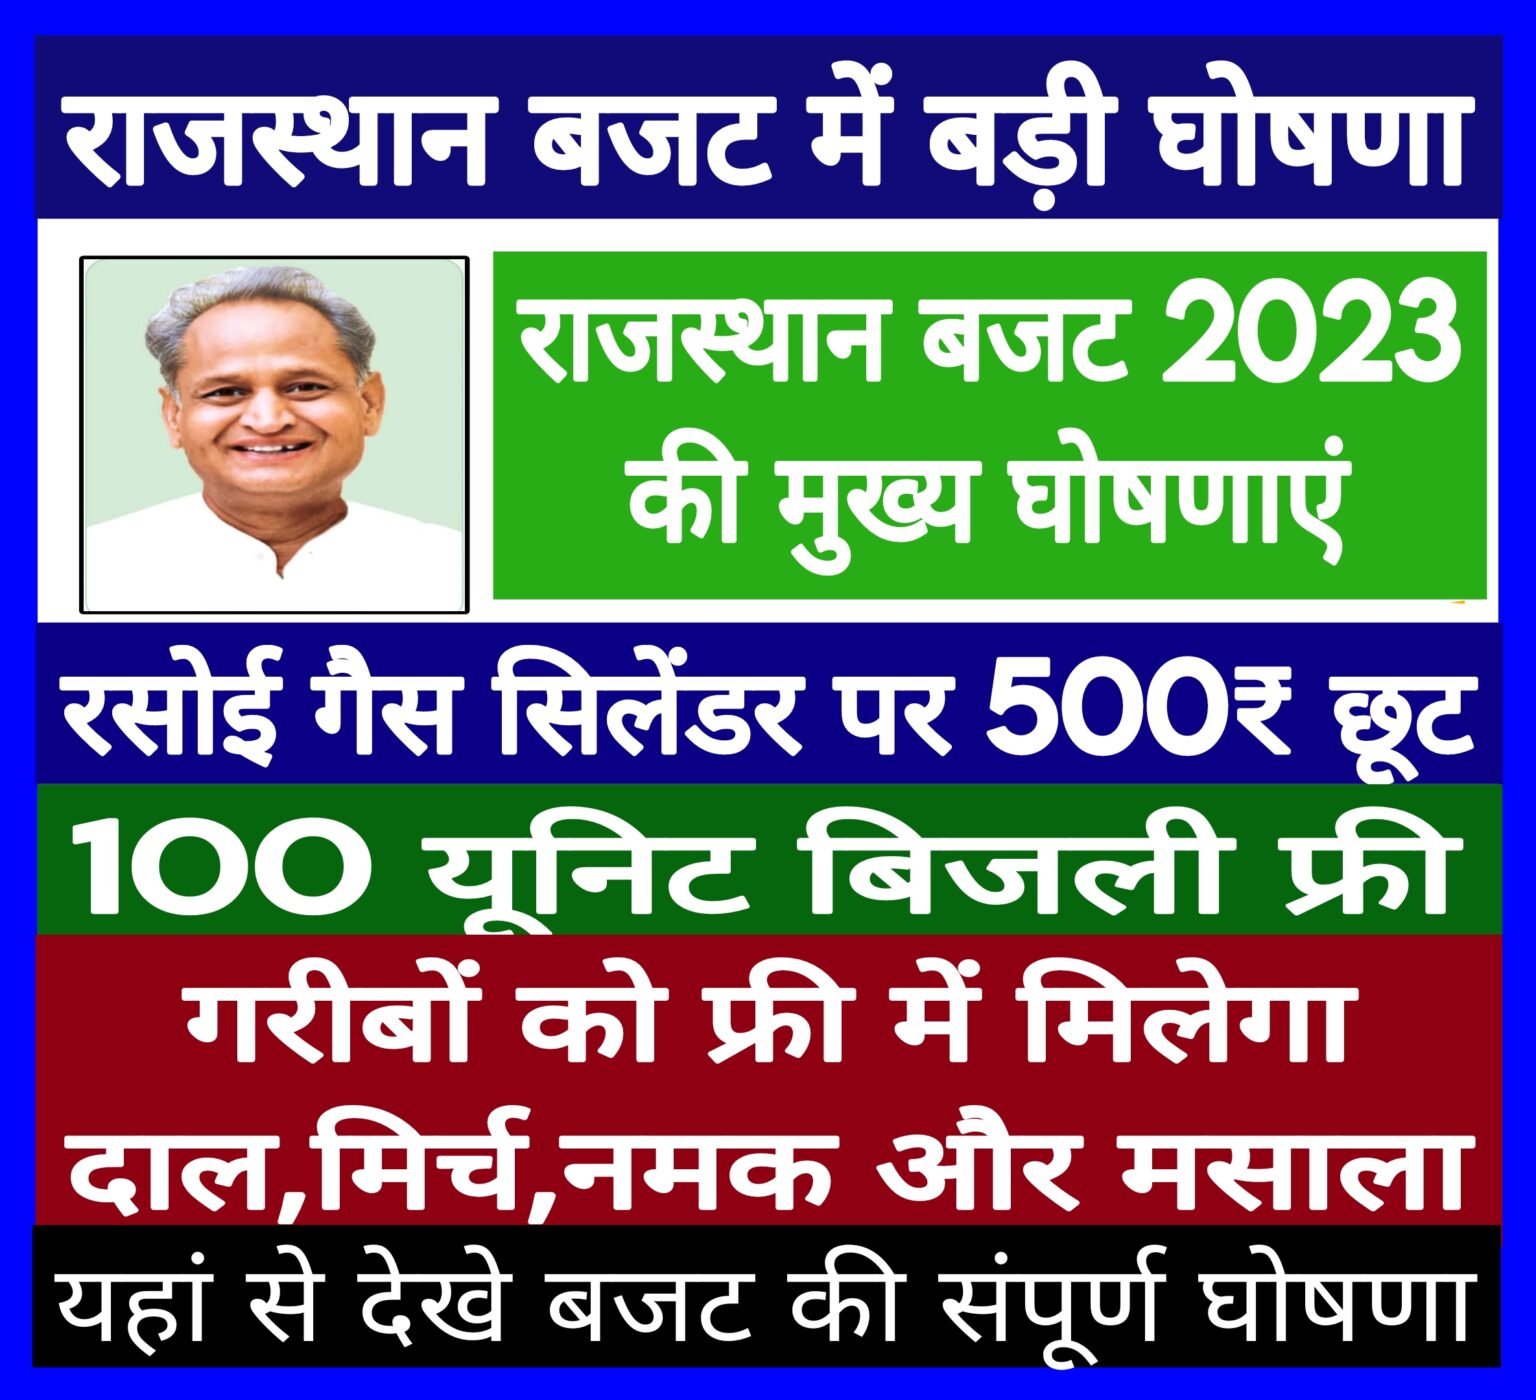 Rajasthan Budget 2023, राजस्थान बजट की मुख्य घोषणाएं,आपको क्या मिला